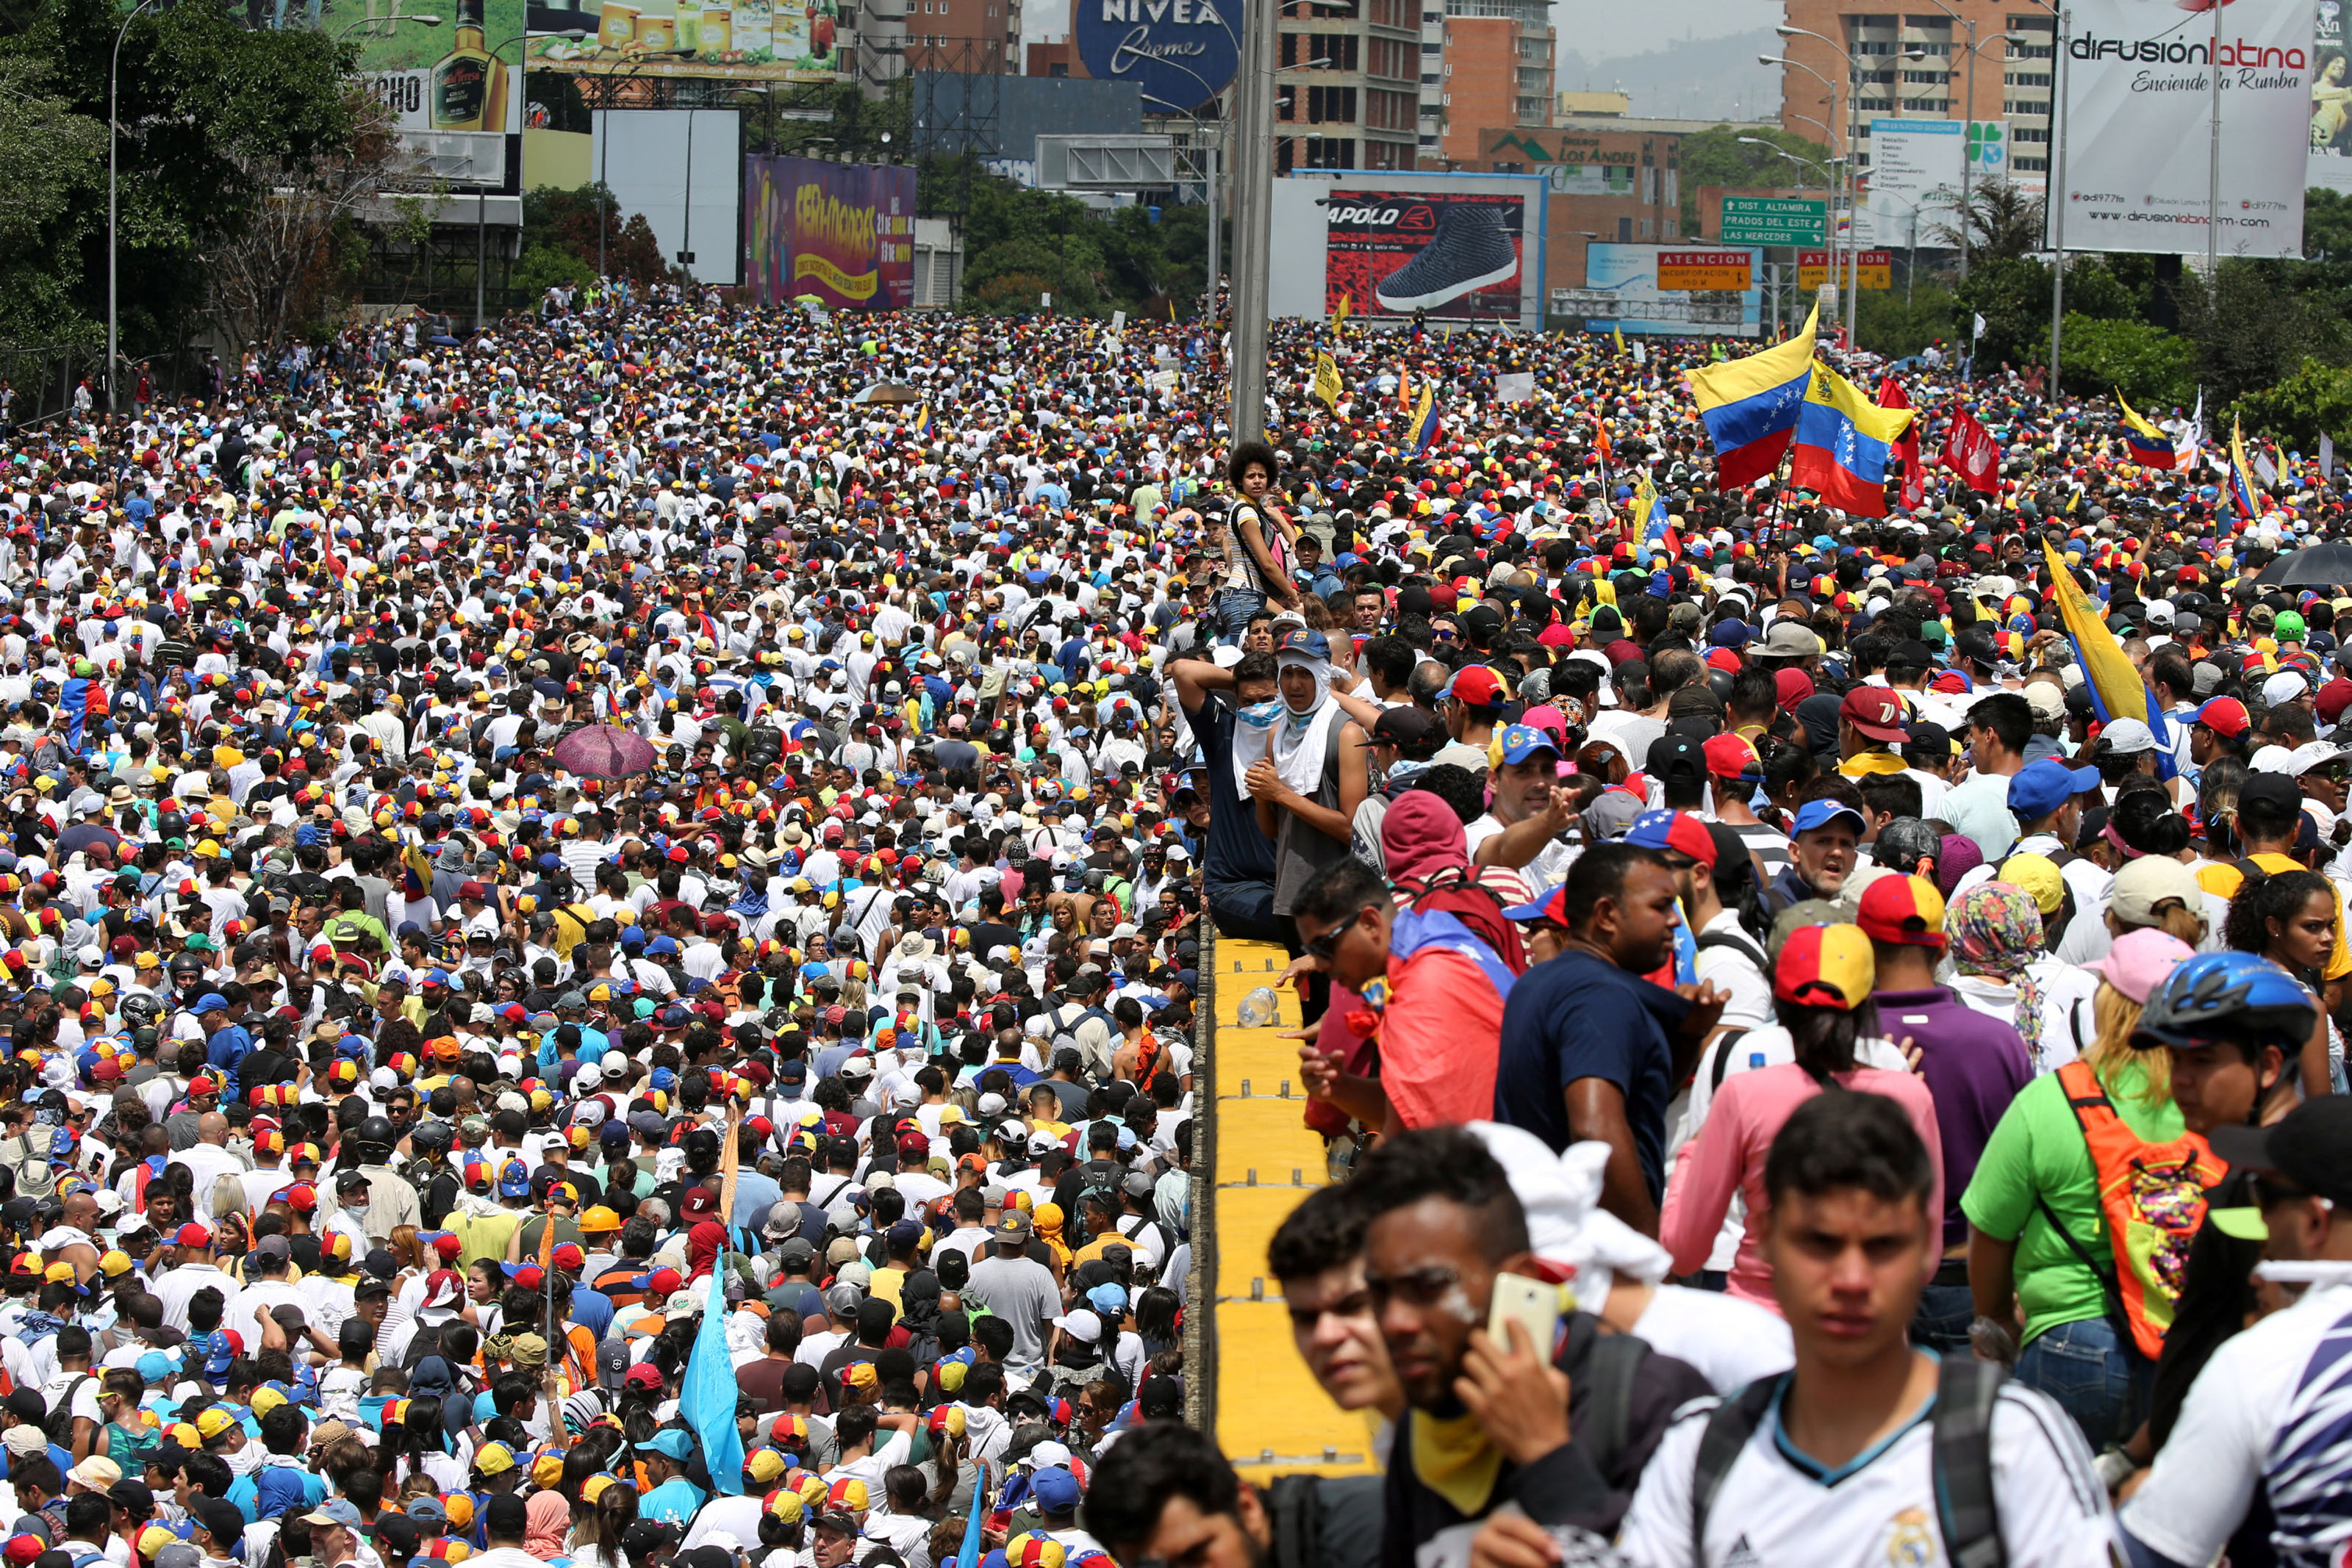 Las FOTOS antes de la represión: Venezolanos decididos desbordaron Caracas en pleno el #19Abr